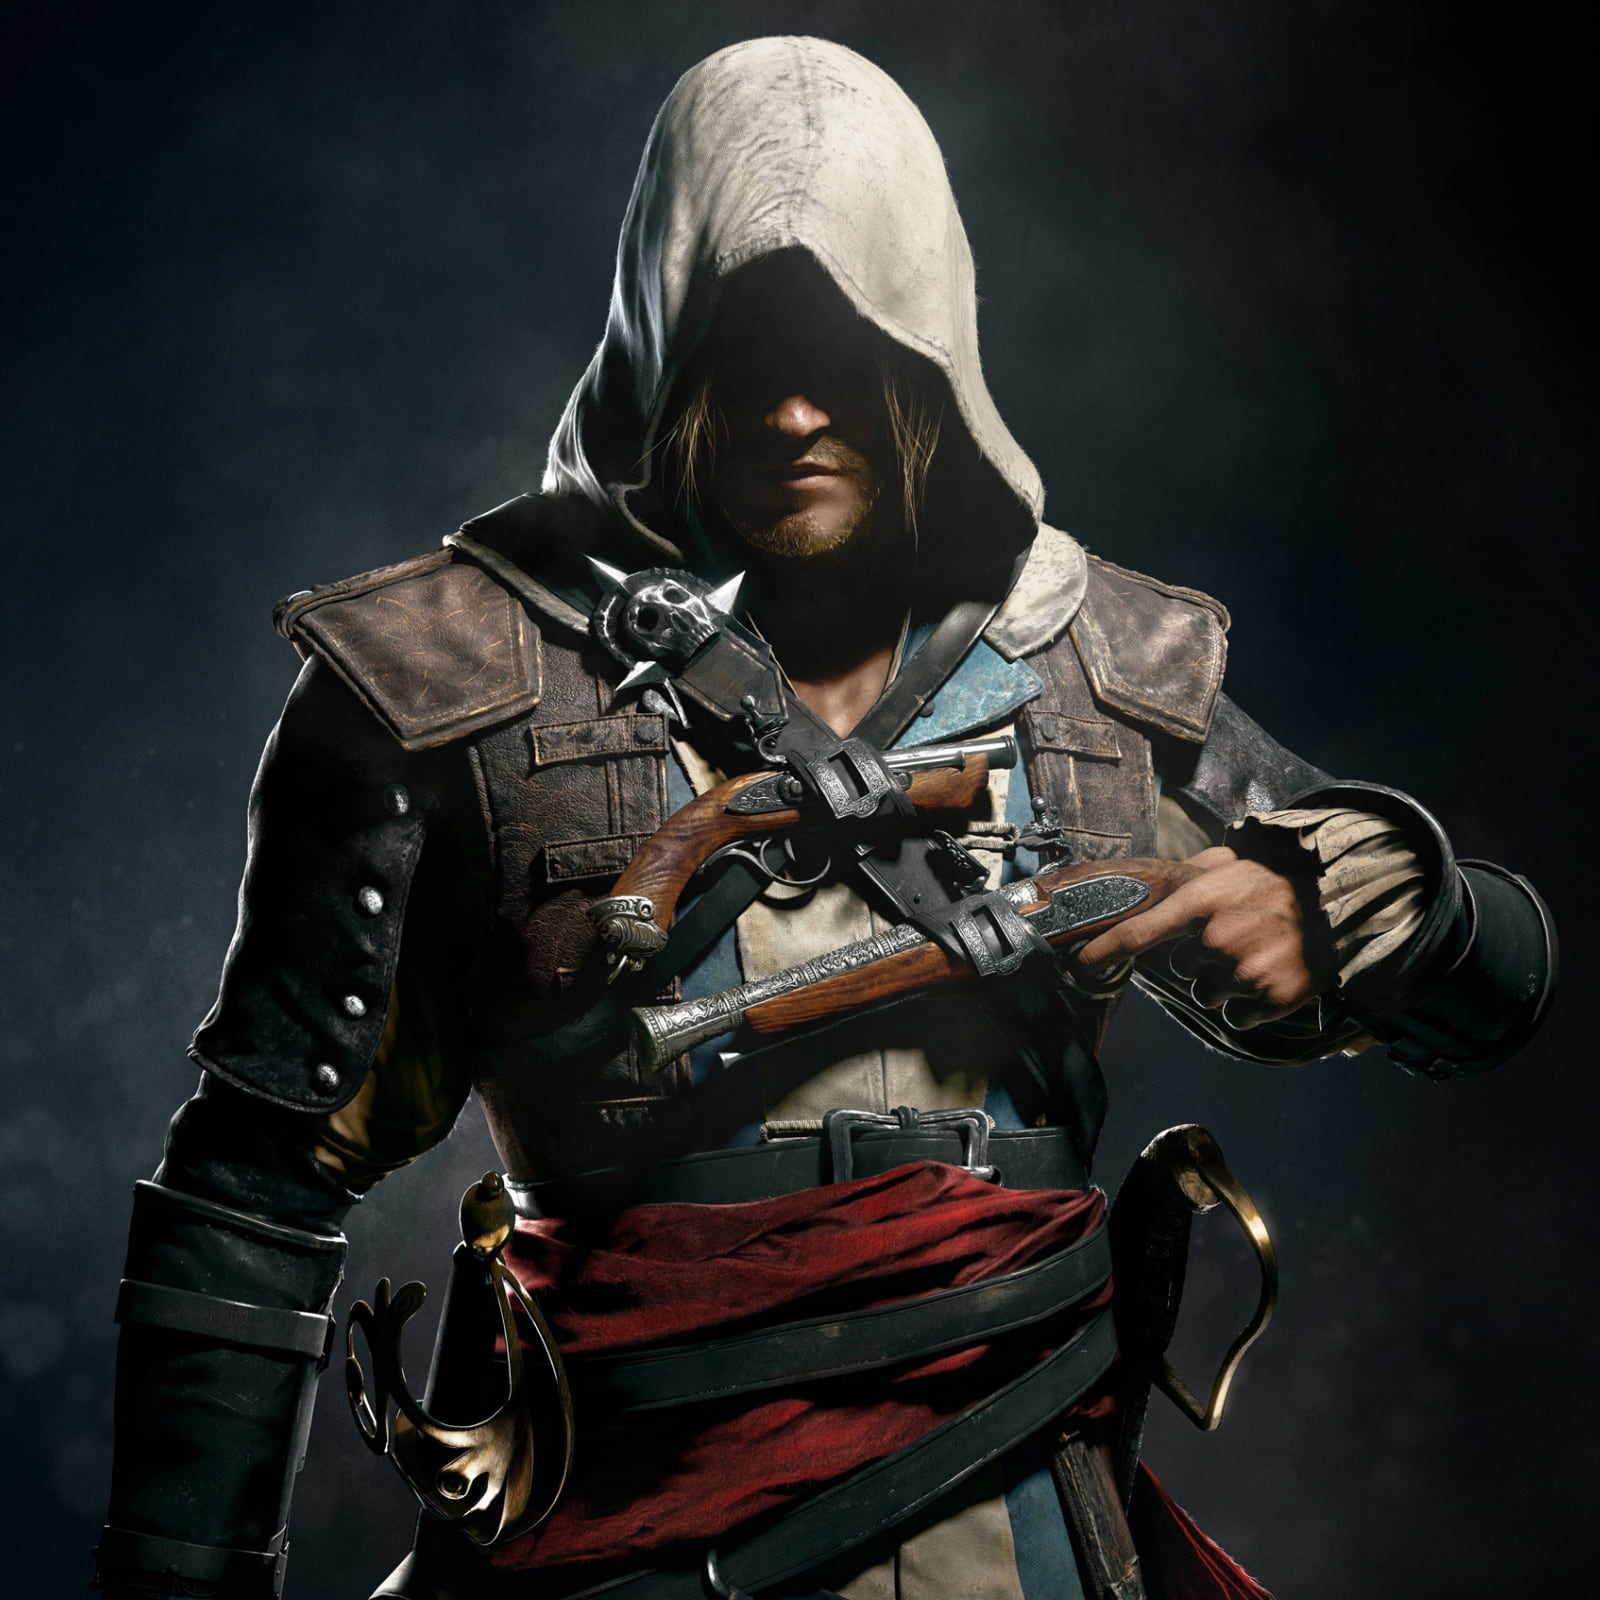 Buy Assassin's Creed Valhalla - Ragnarok Edition Steam PC Key 